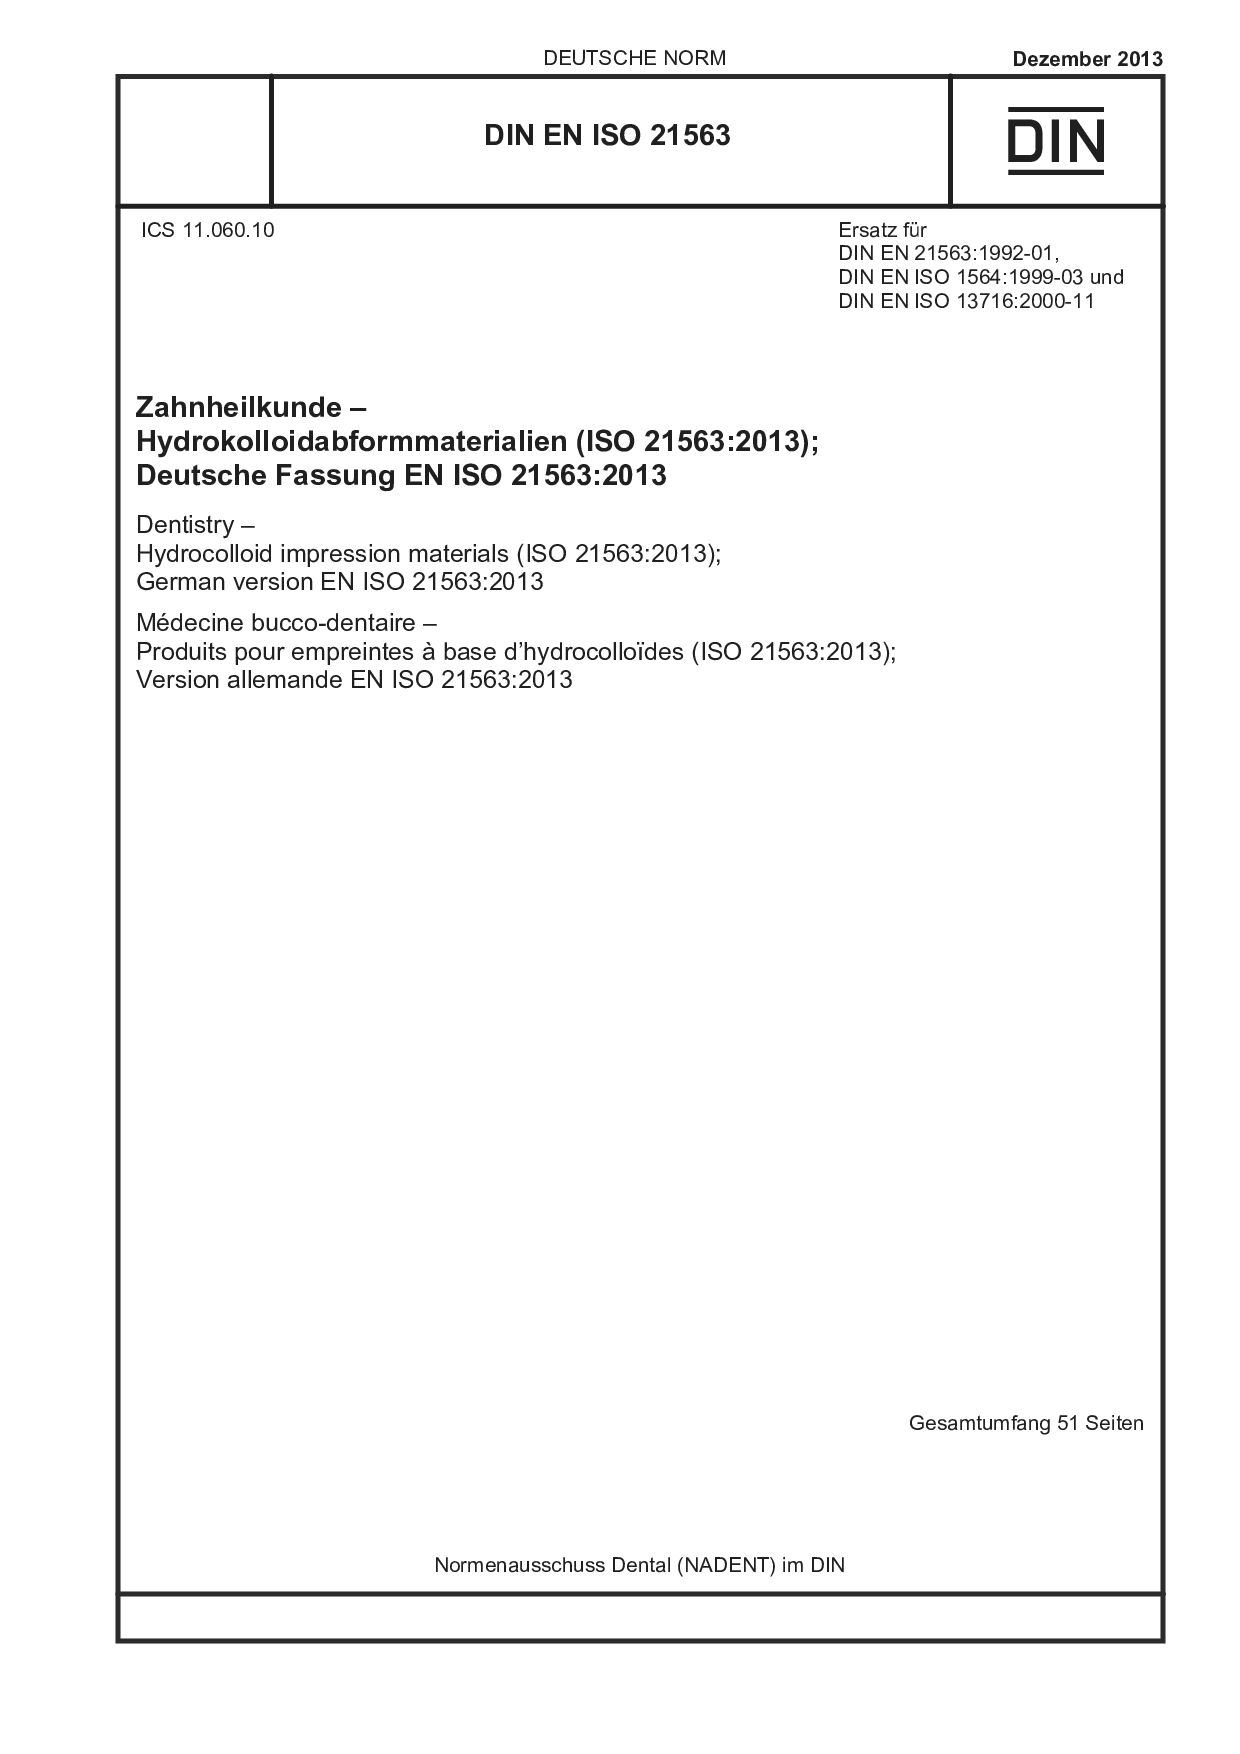 DIN EN ISO 21563:2013